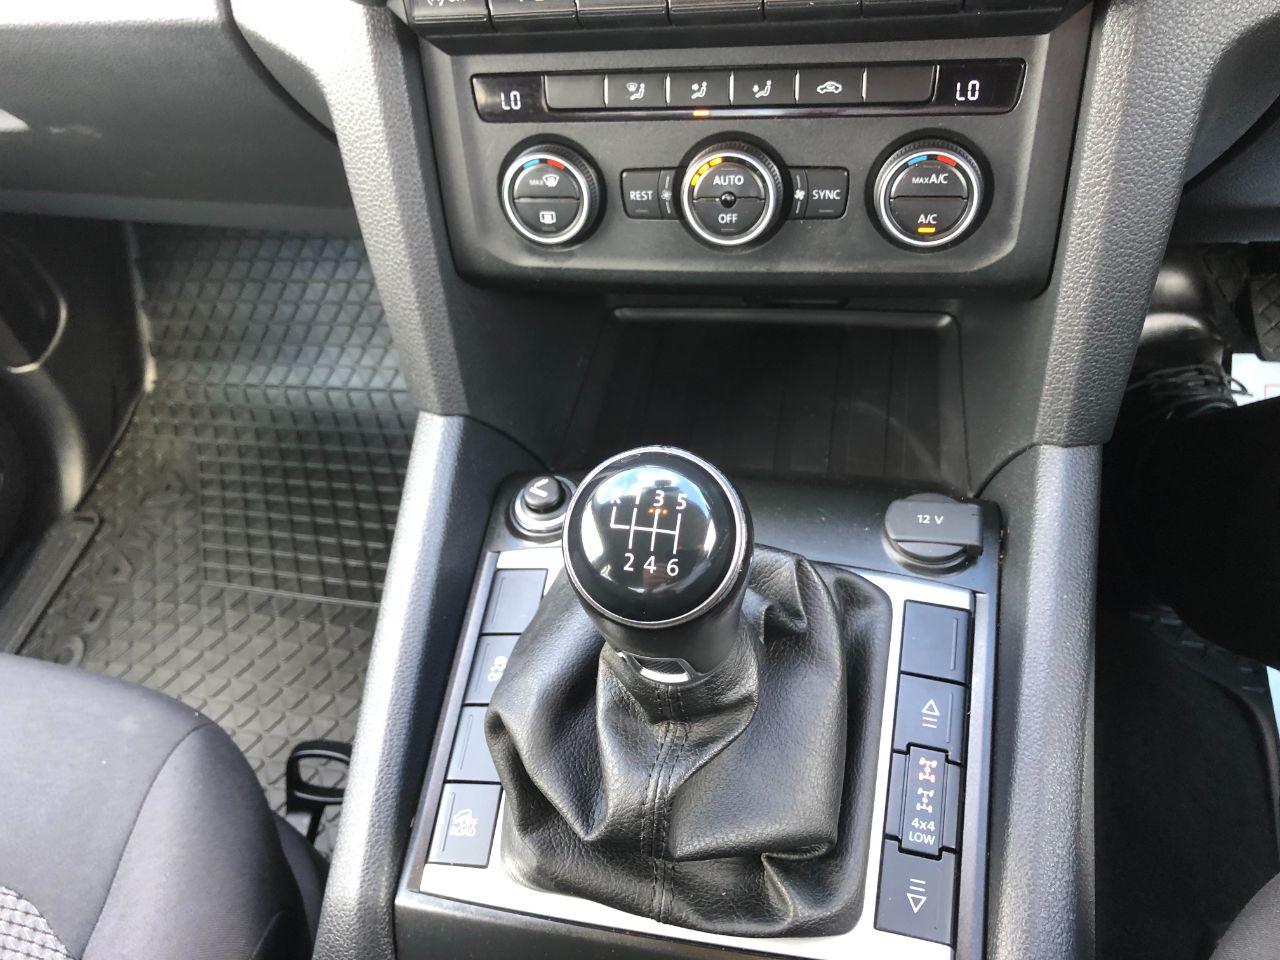 2019 Volkswagen Amarok D/Cab Pick Up Trendline 3.0 V6 TDI 204 BMT 4Motion